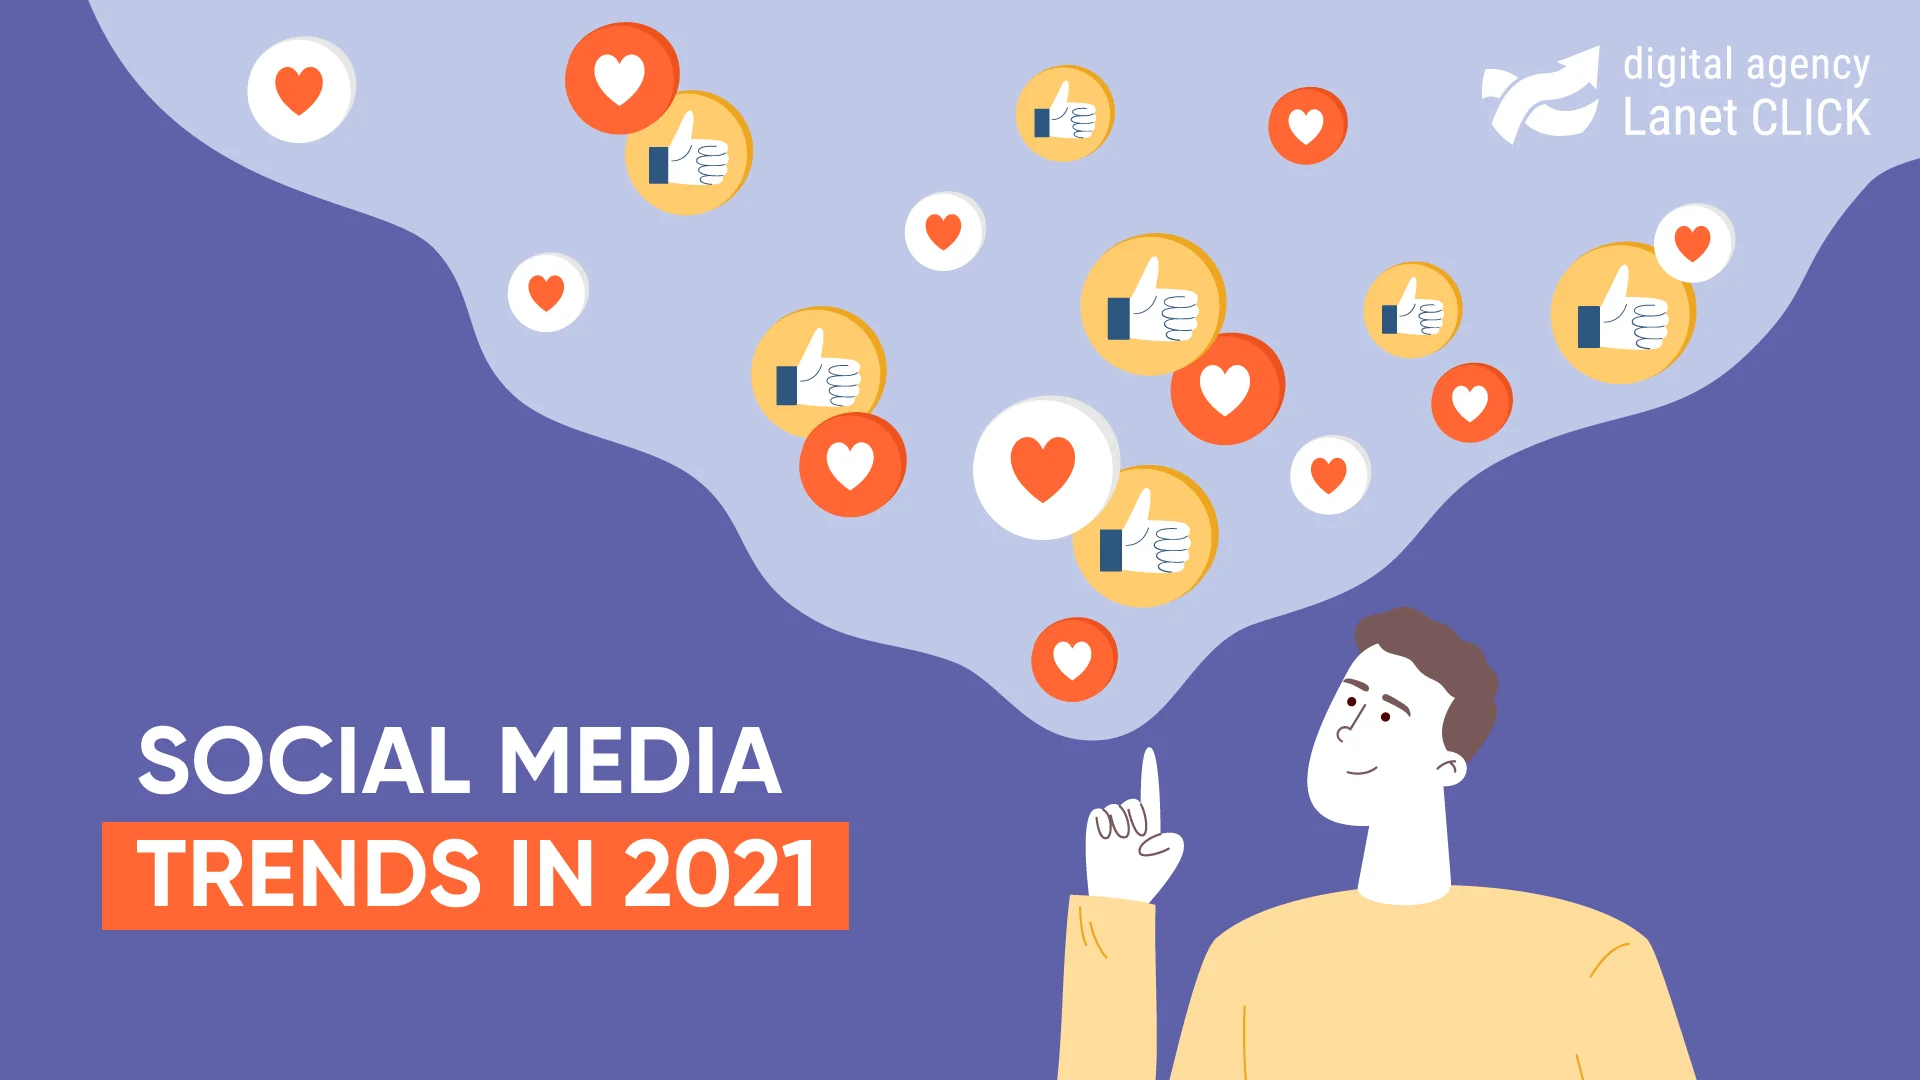 Social media trends in 2021